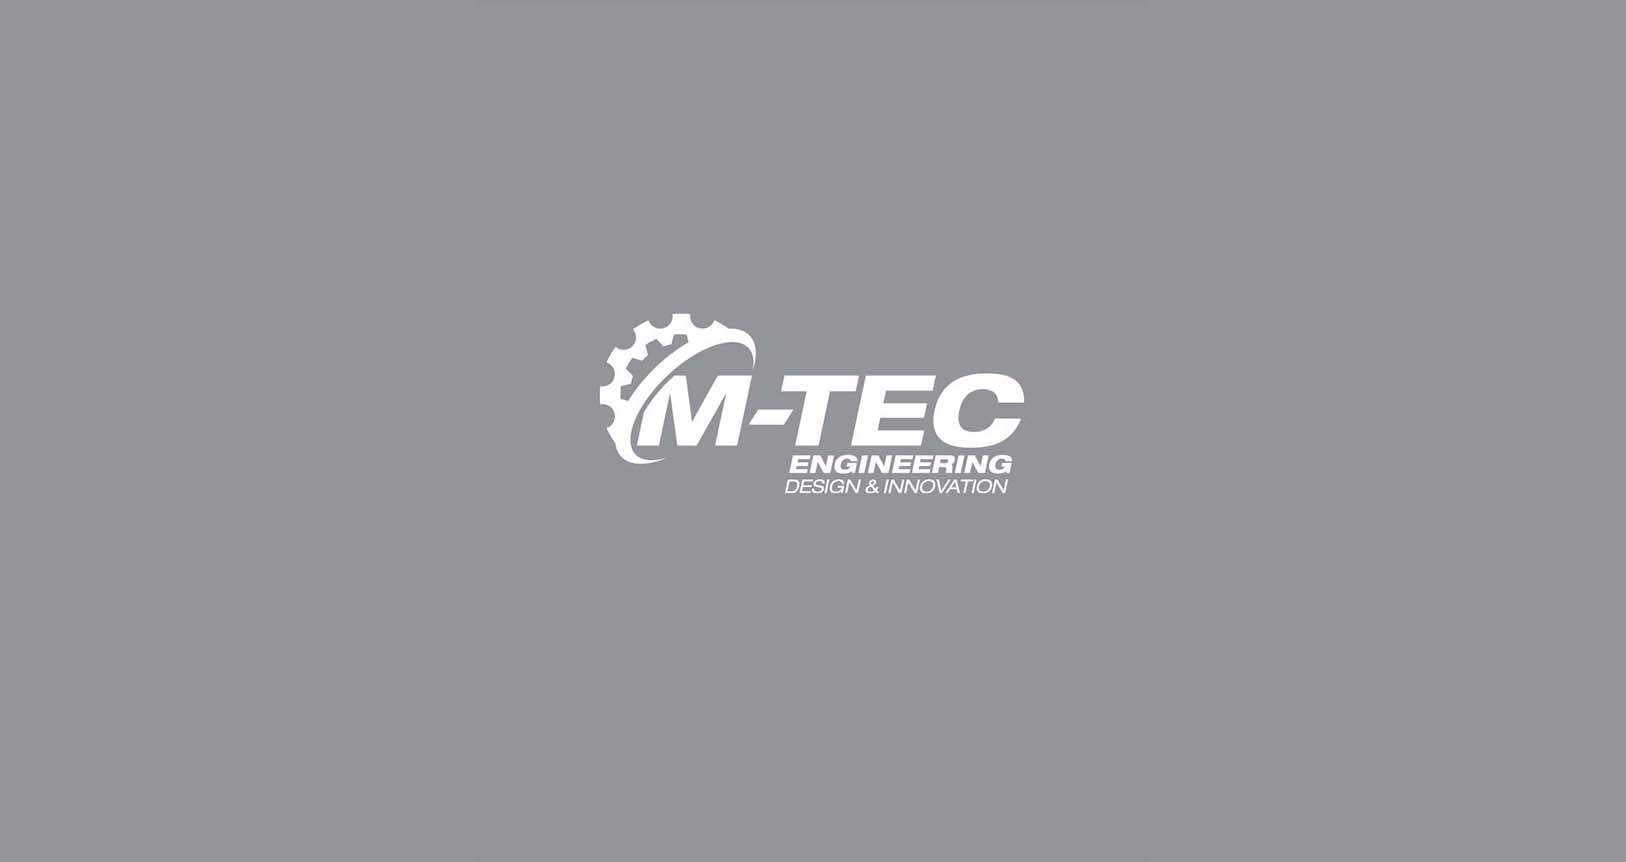 M-TEC-ENGINEERING-TOP-WIDE-BANNER